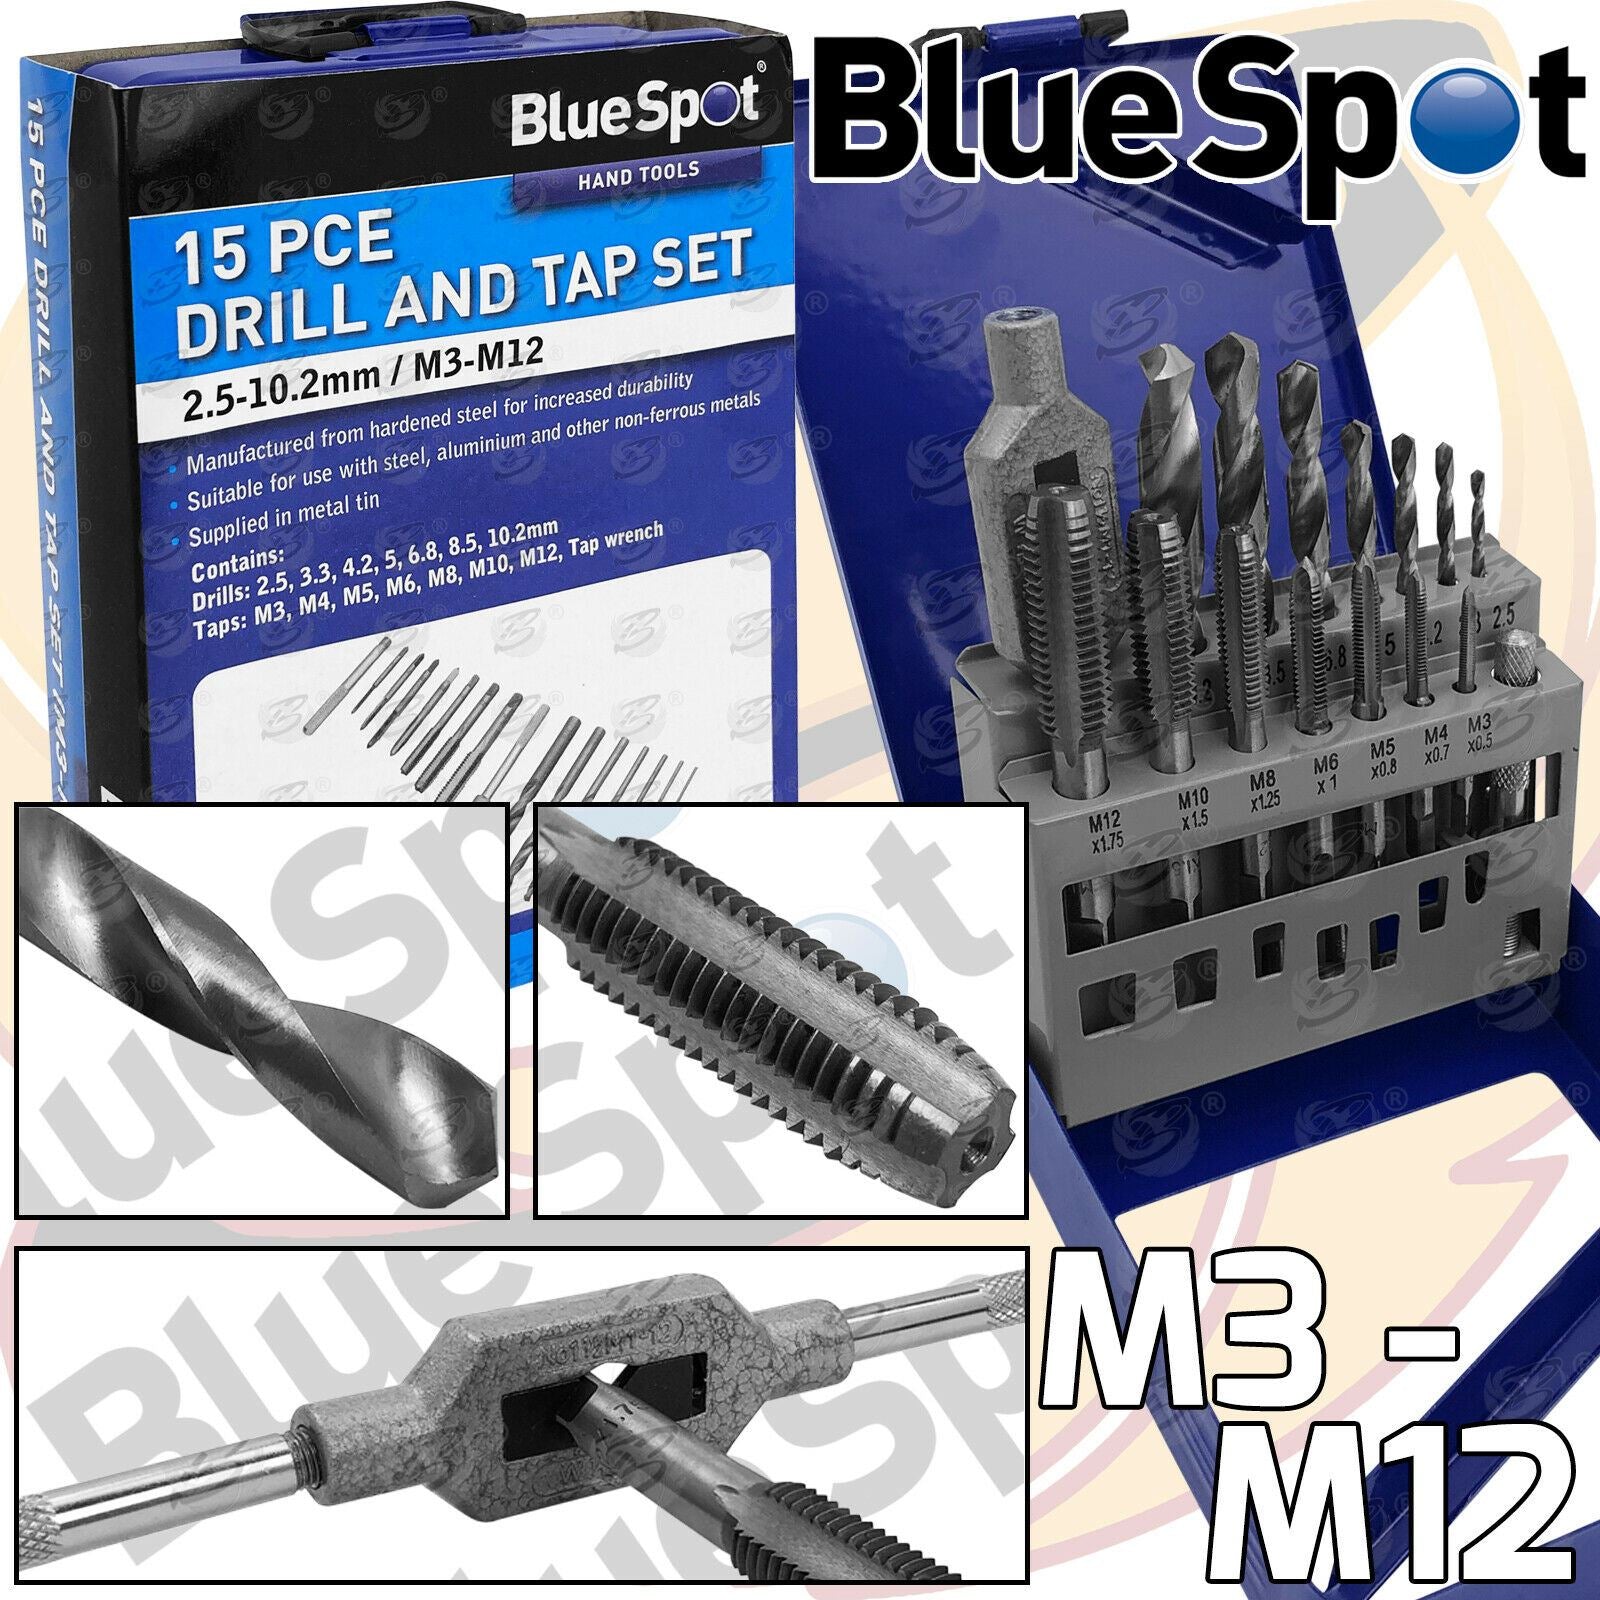 BLUESPOT 15PCS METRIC DRILL & TAP SET M3 - M12